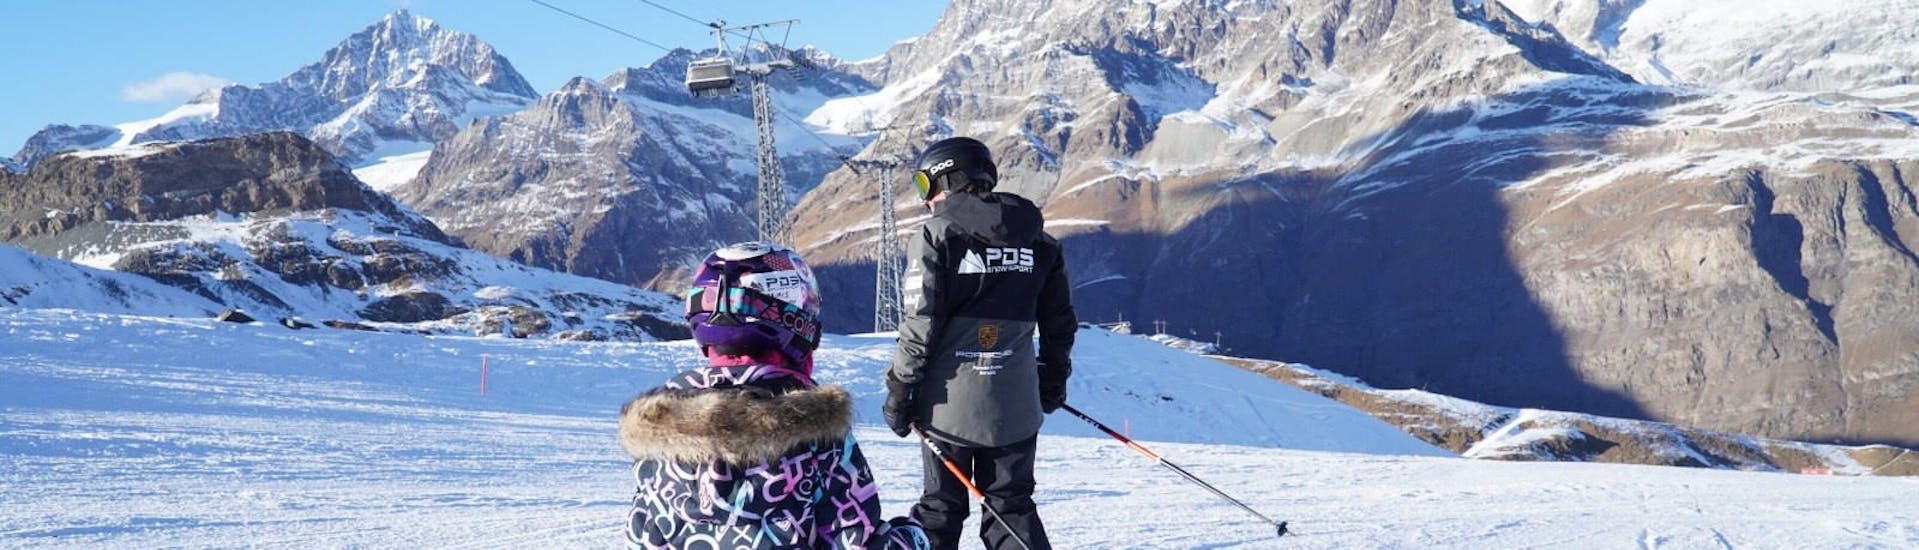 Zwei kleine Skifahrer fahren während einem Kinder-Skikurs ihrem Skilehrer von der Skikschule PDS Snowsports hinterher. 